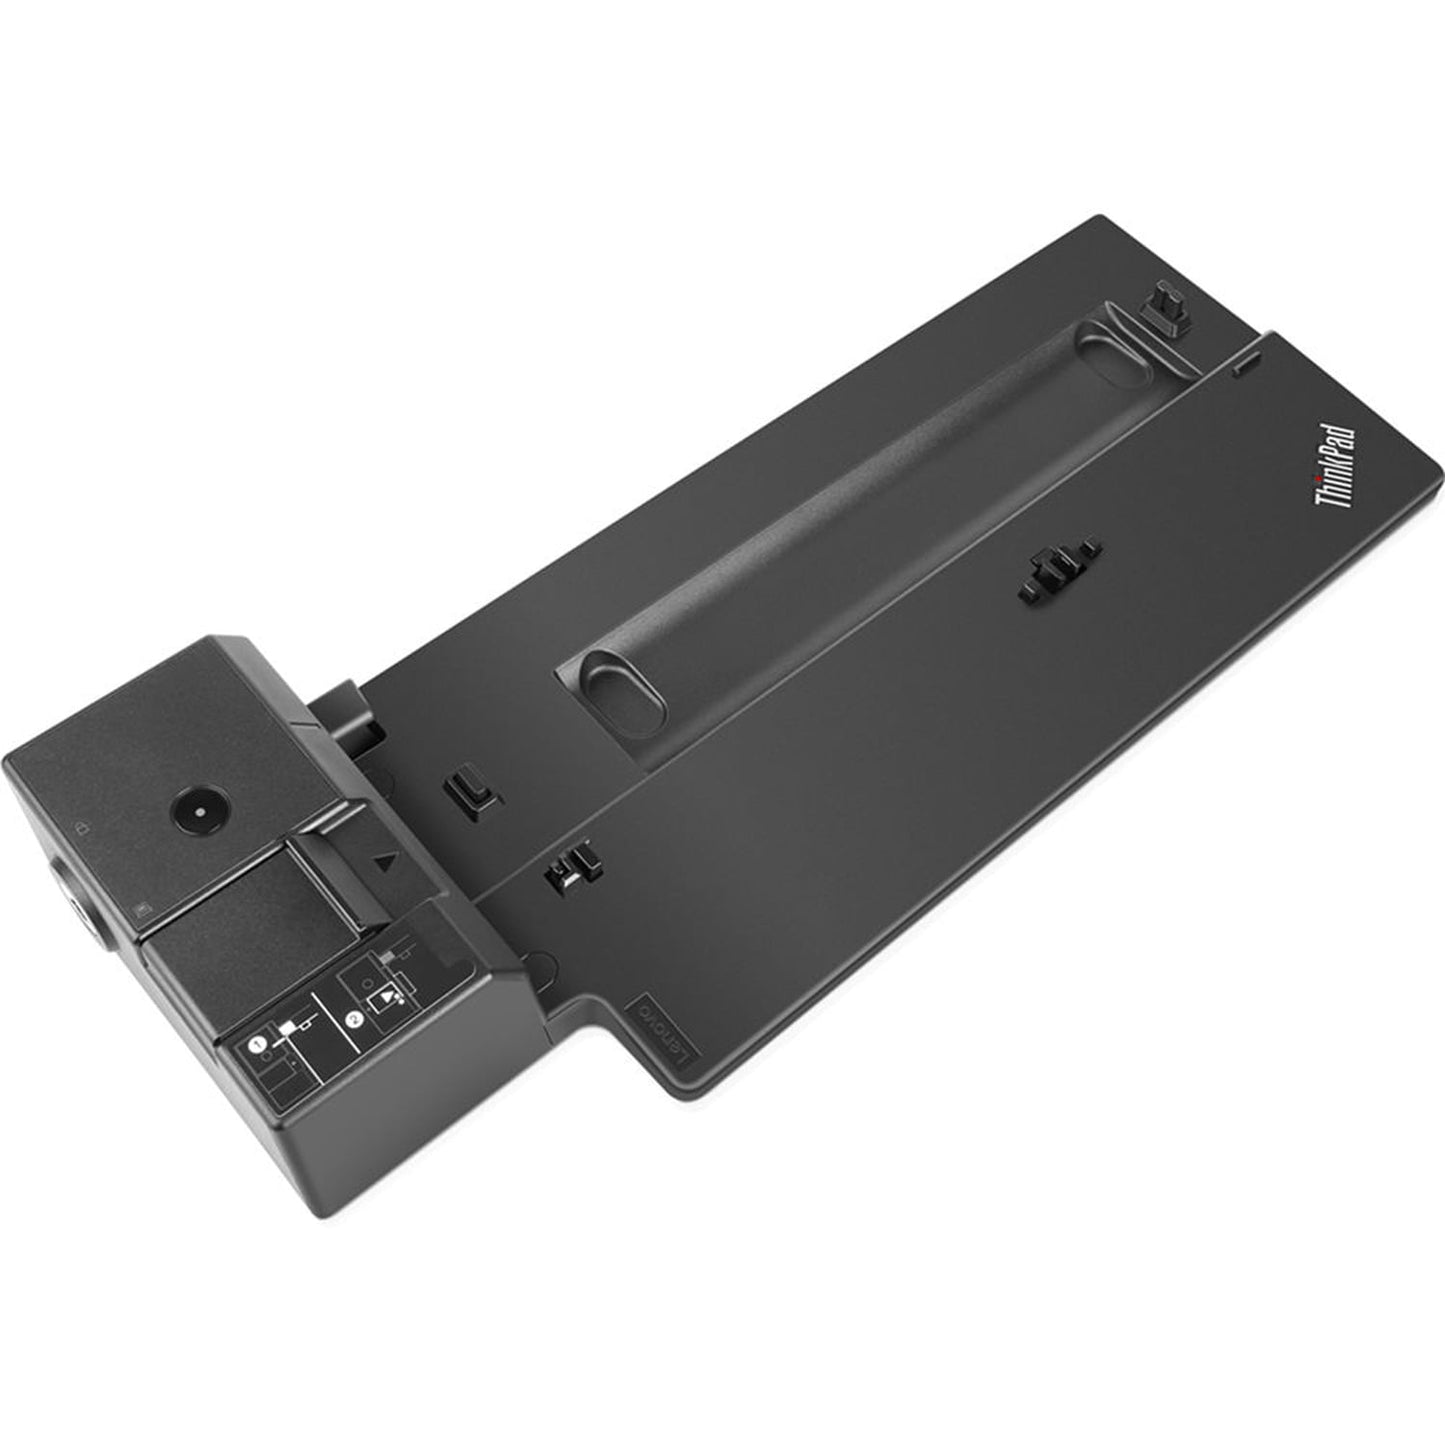 Lenovo ThinkPad Basic Docking Station - 40AG0090US Used